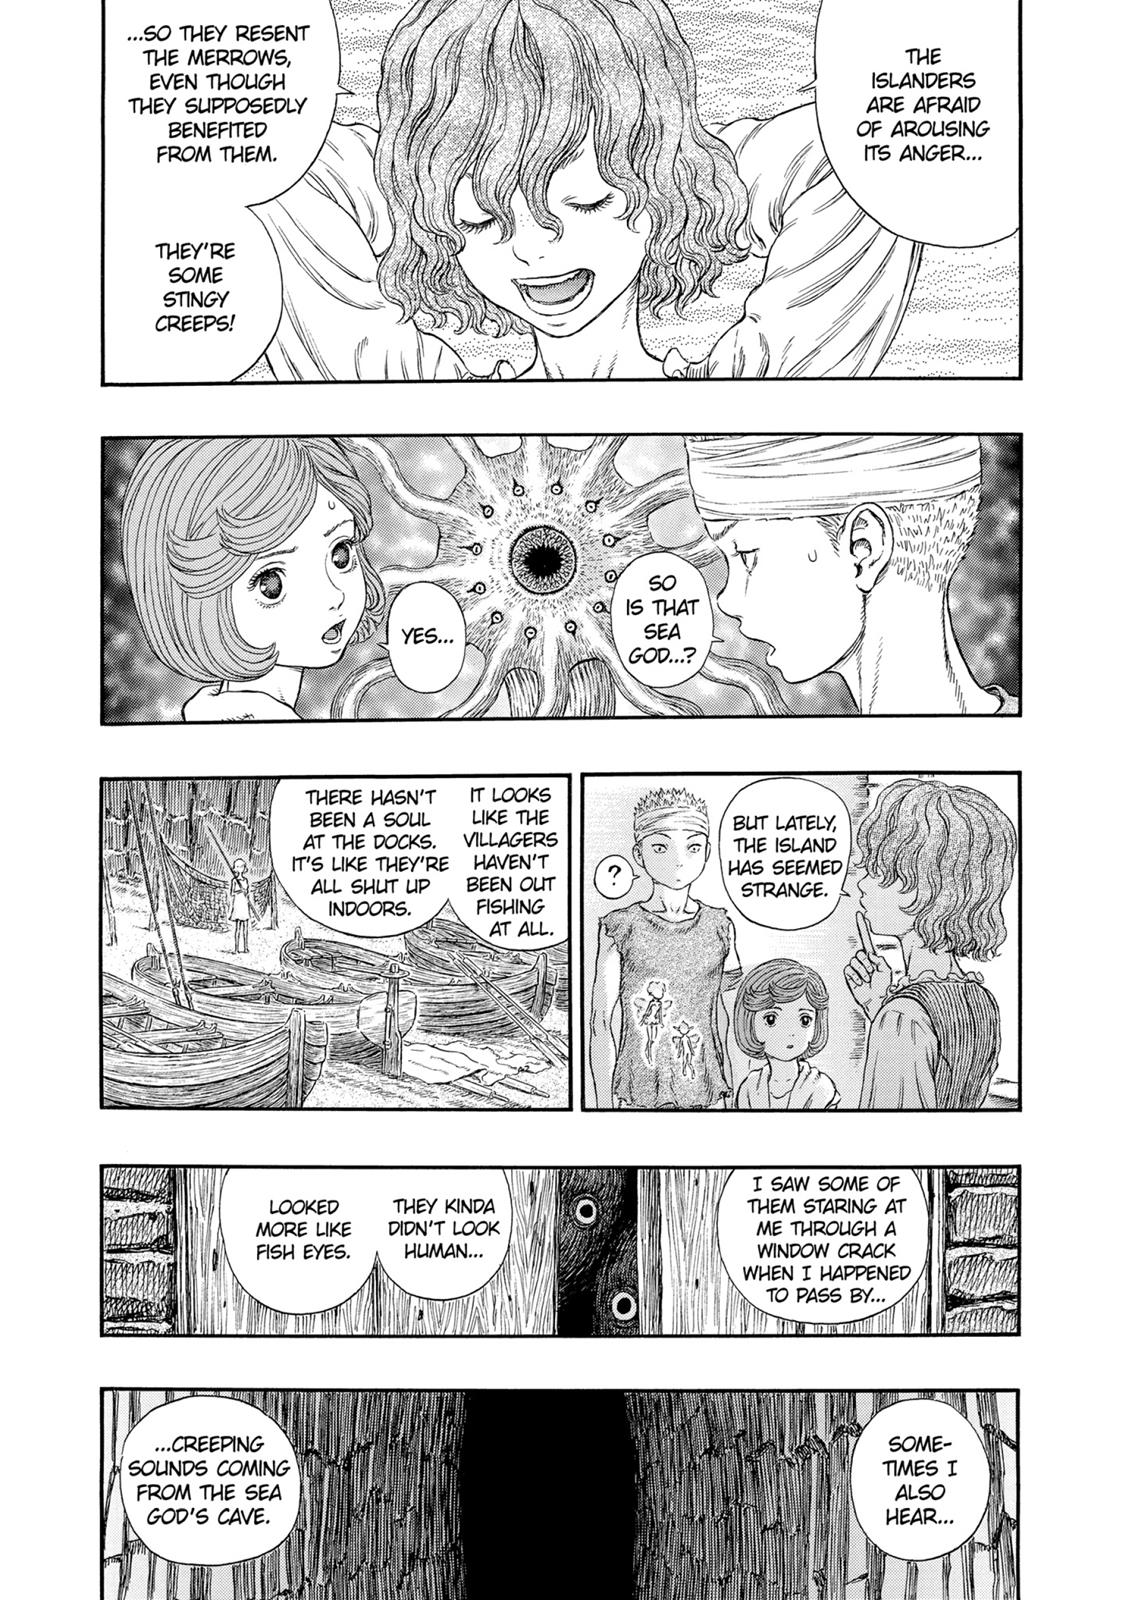 Berserk Manga Chapter 313 image 10